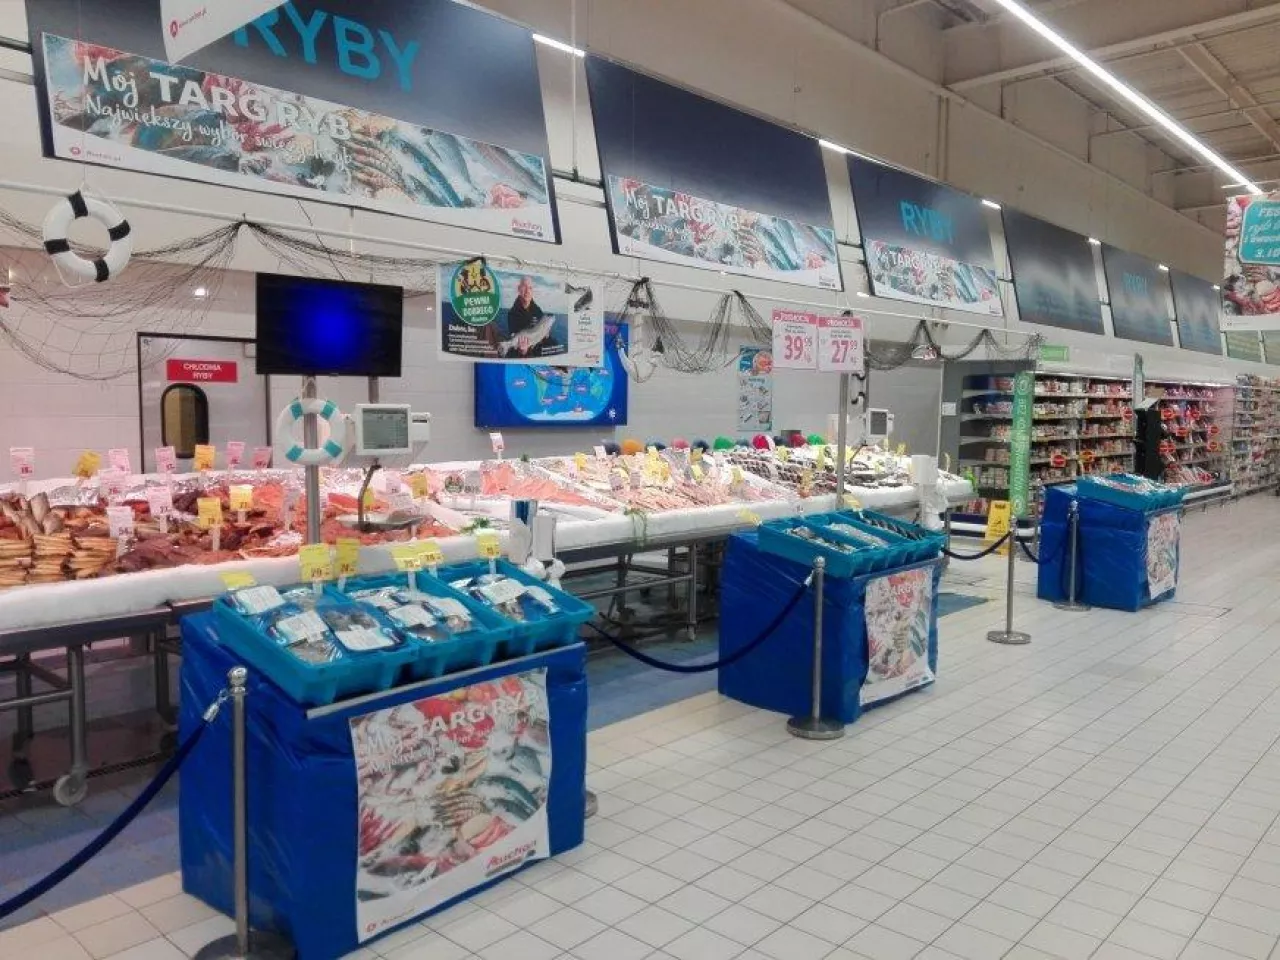 Stoisko rybne w hipermarkecie Auchan (Materiały prasowe Auchan)